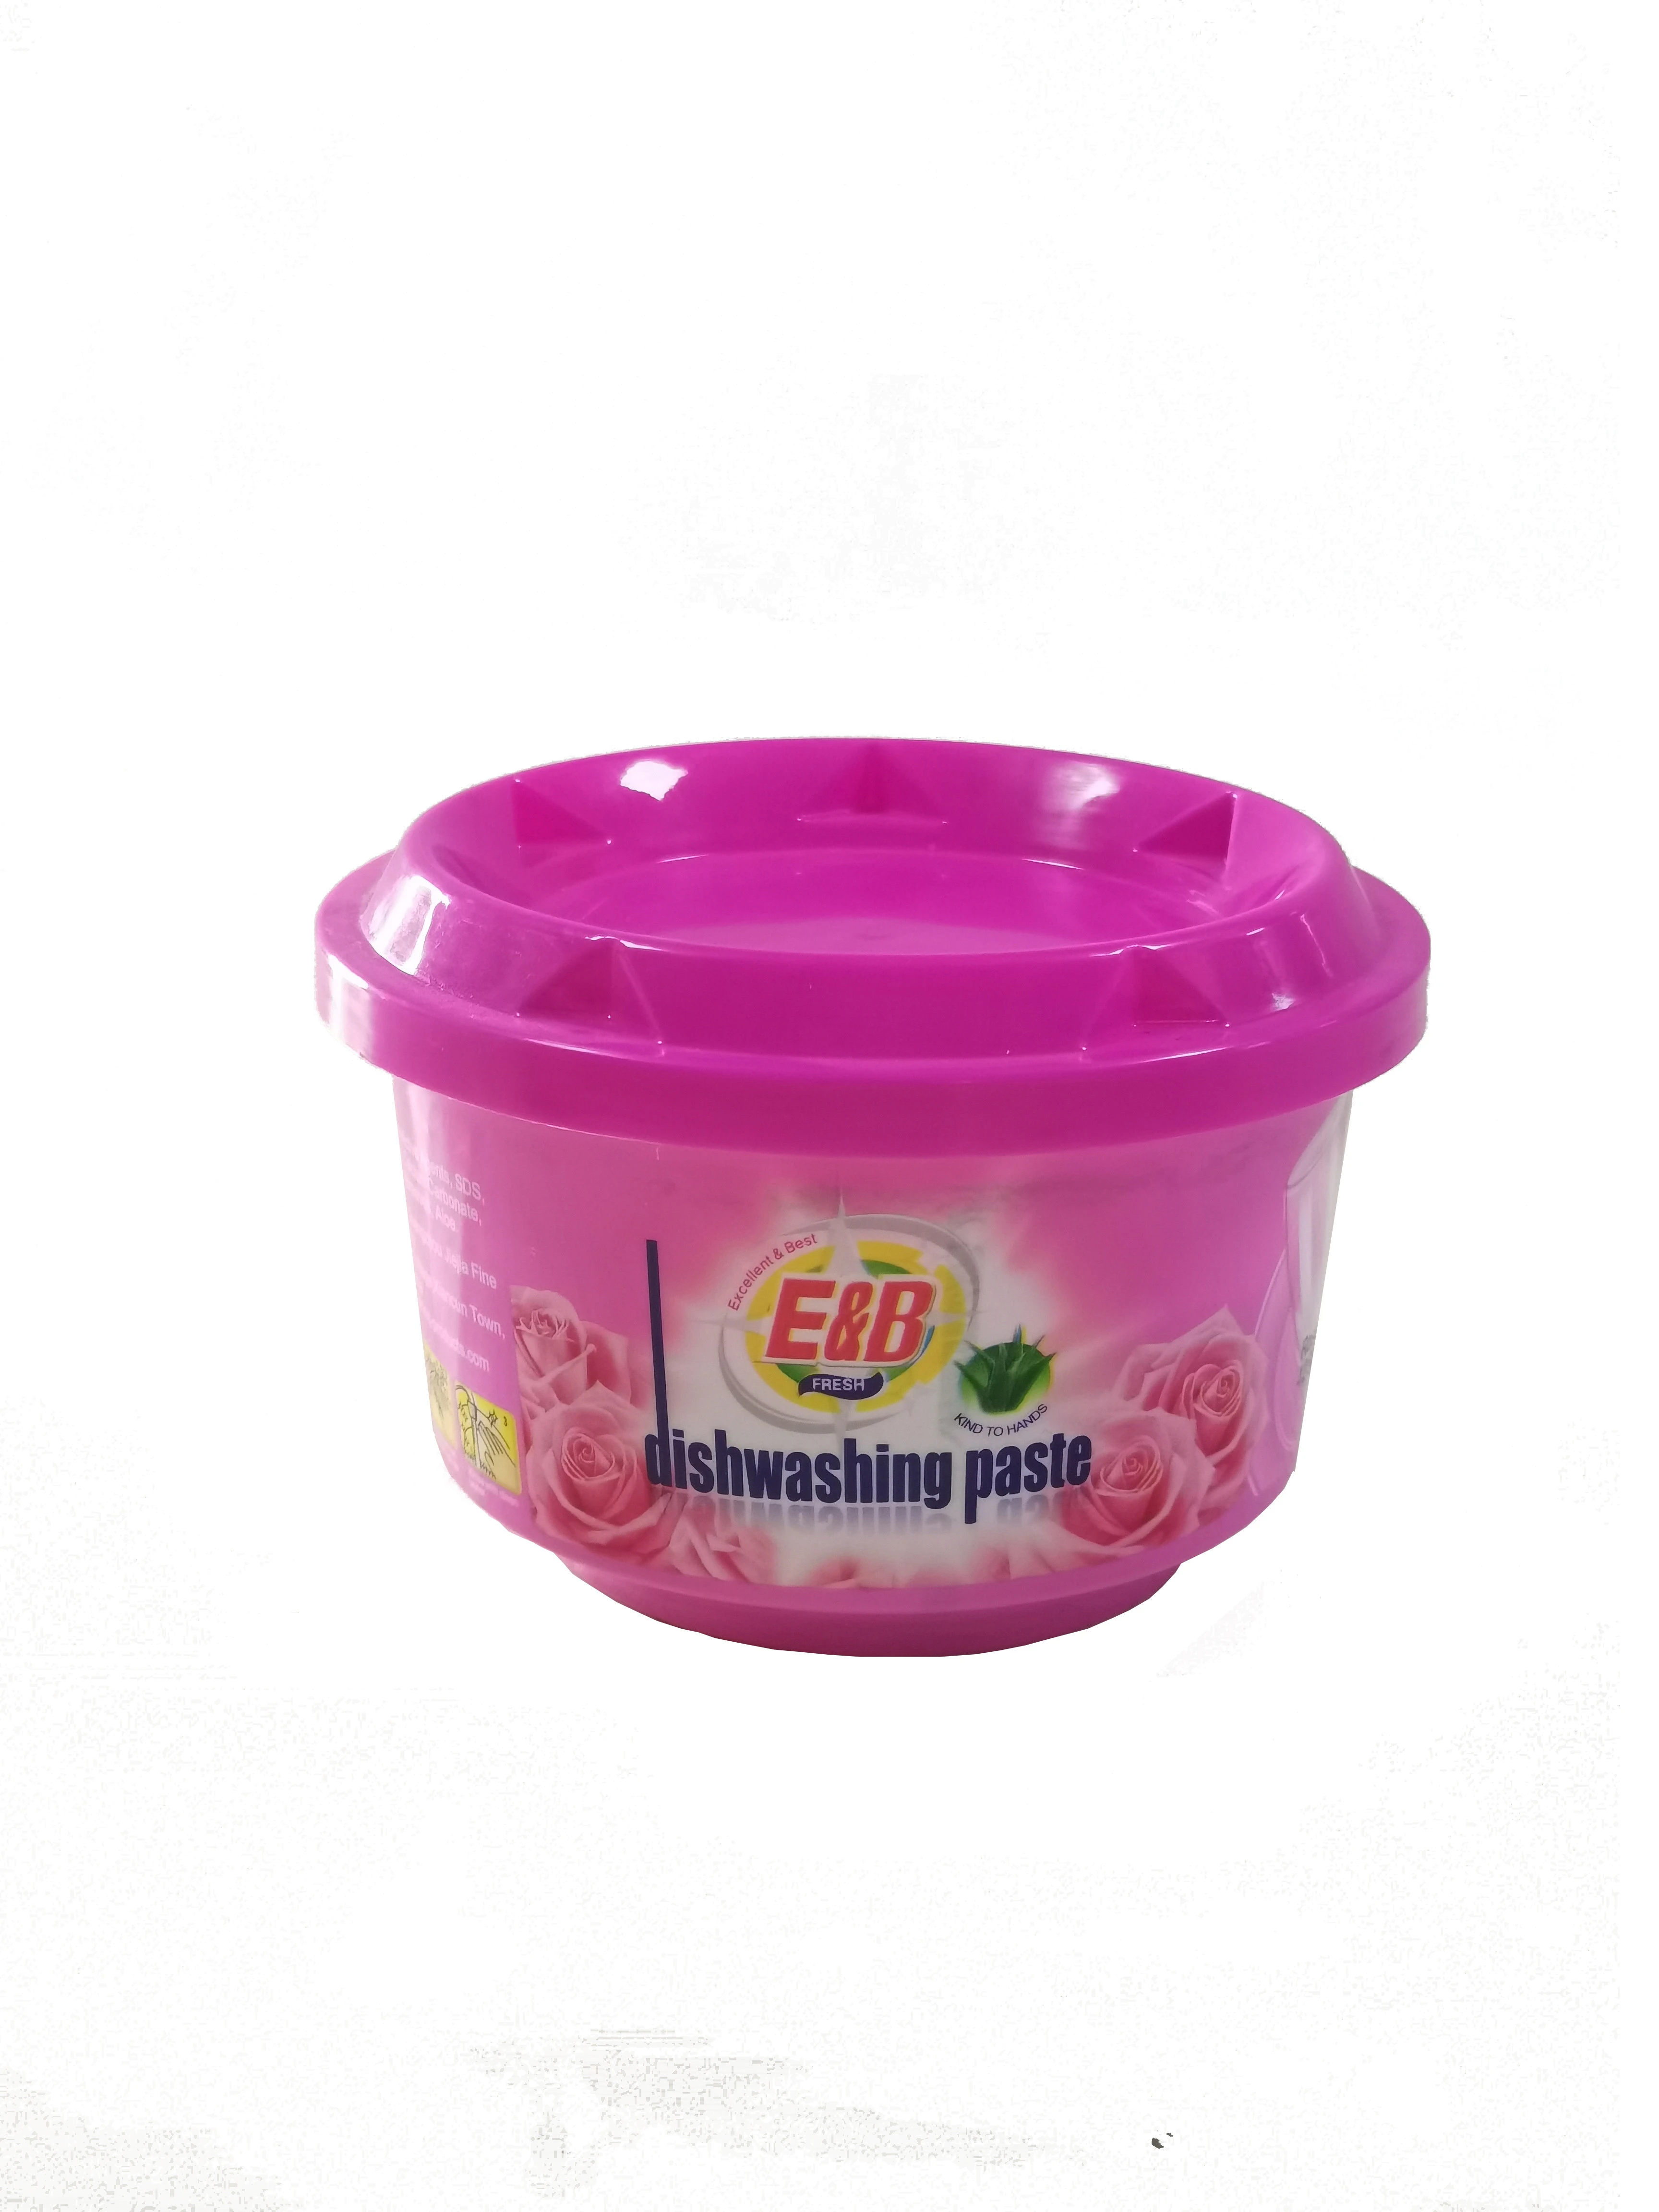 E&B Brand Dishwashing Paste Detergent dish wash cake soap cream dishwasher detergent